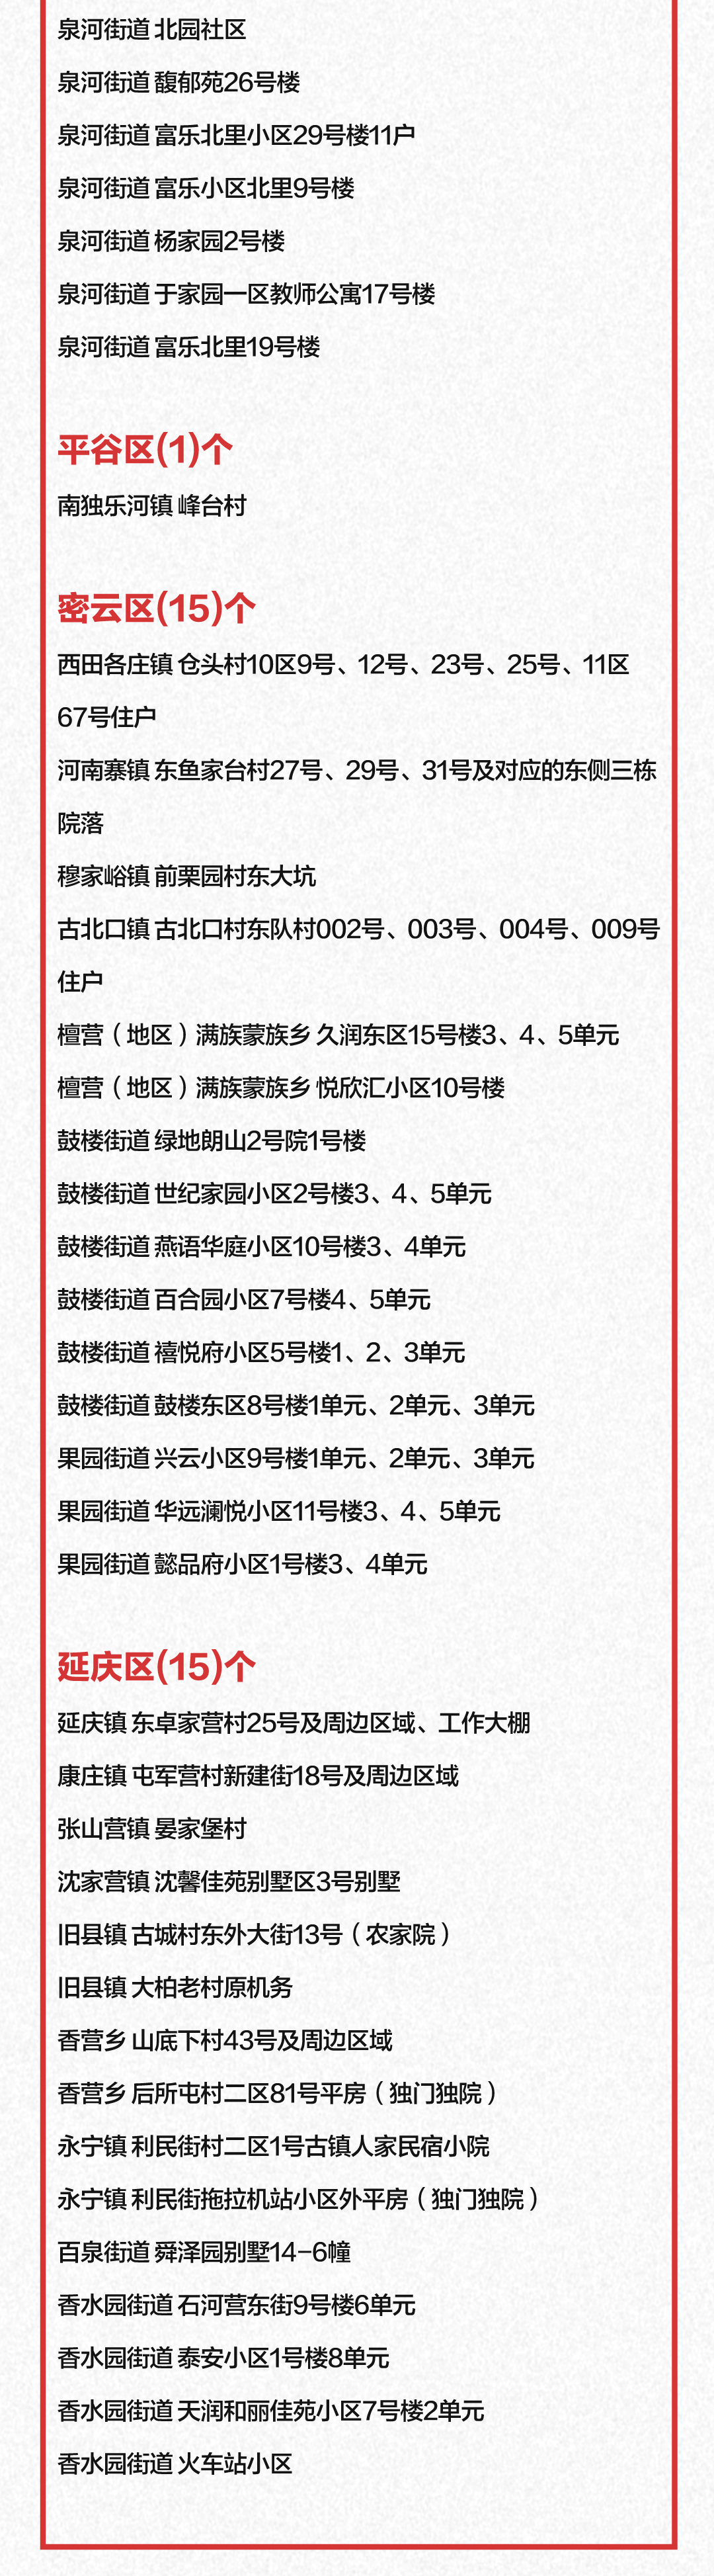 北京发布大风黄色预警信号局地阵风可达9级以上80年代的小学课文有哪些